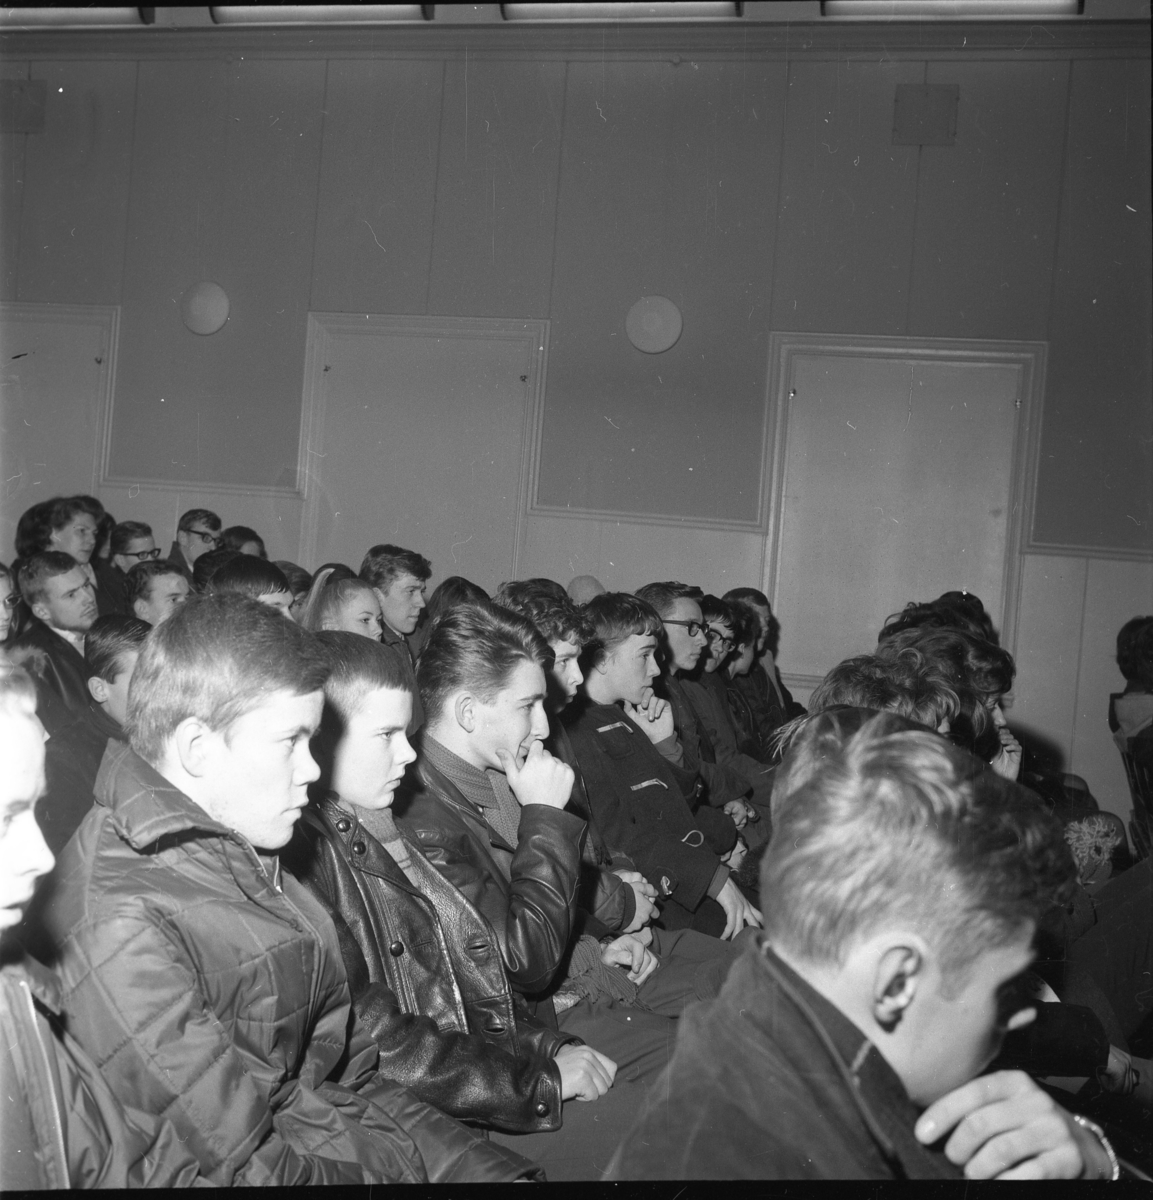 Ung publik från Gränna realskola i Grännaskolans matsal som lyssnar på Arne Domnérus orkester i februari 1964. I andra raden fr vänster sitter Sigvard Jarl som nummer två, därnäst Sven-Åke Wadskog, Göran Malm, Christer Andersson och Gösta Ekman och sjua är Håkan Grennwall. Flickan med hästsvans i raden bakom är Marita Wallmo, på hennes vänstra sida sitter Per Lilja. I vänstra hörnet sitter också bland andra Lars Aspgren, Mrs Janes, Claes Jerneck och Anders Thörnblad.